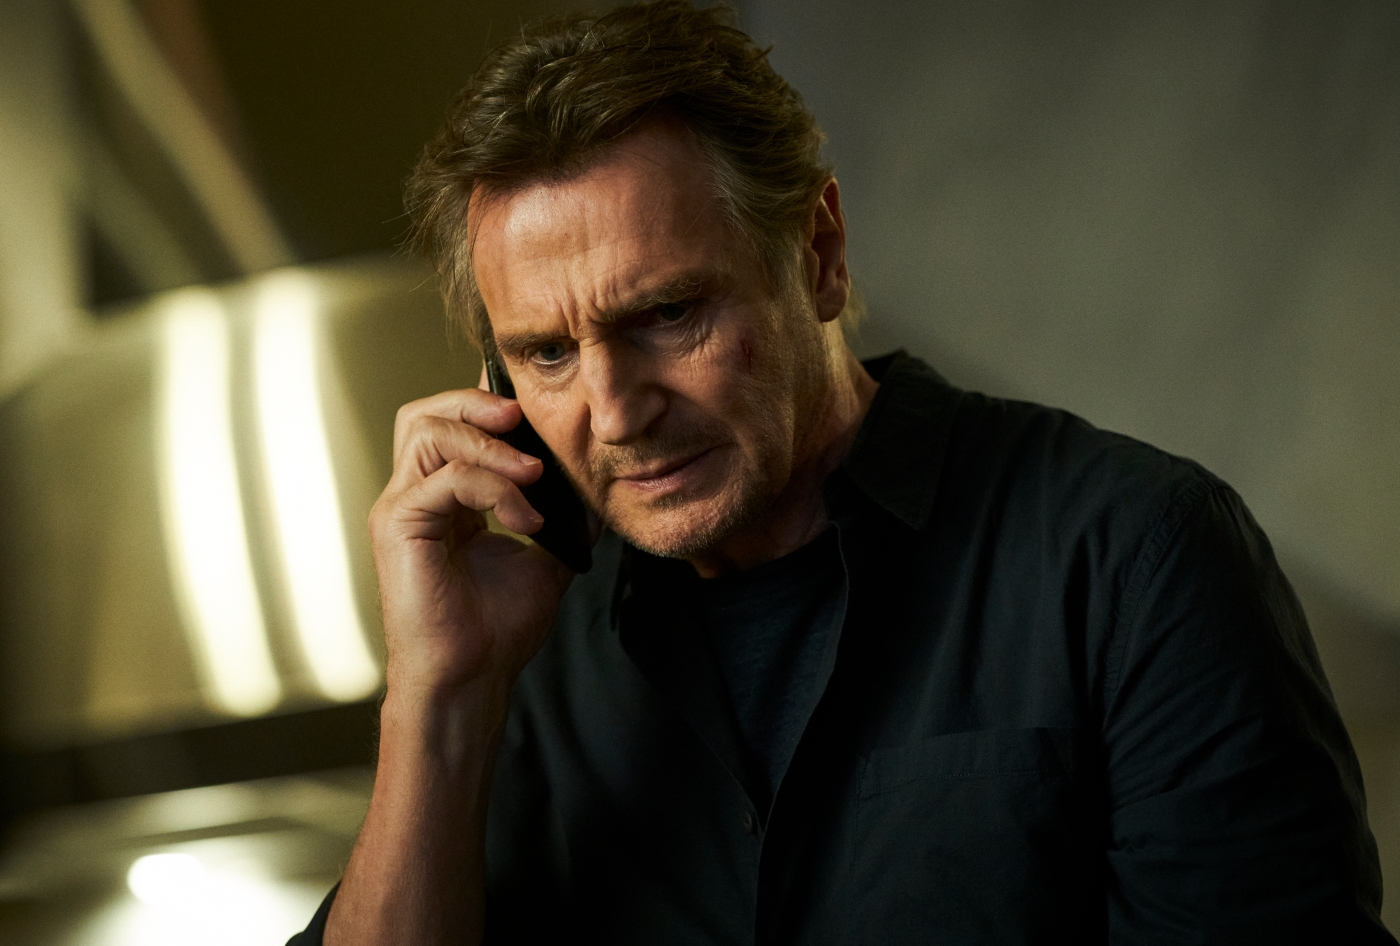 Travis am Telefon (Liam Neeson) lässt nicht locker, bis er die Wahrheit aufgedeckt hat.